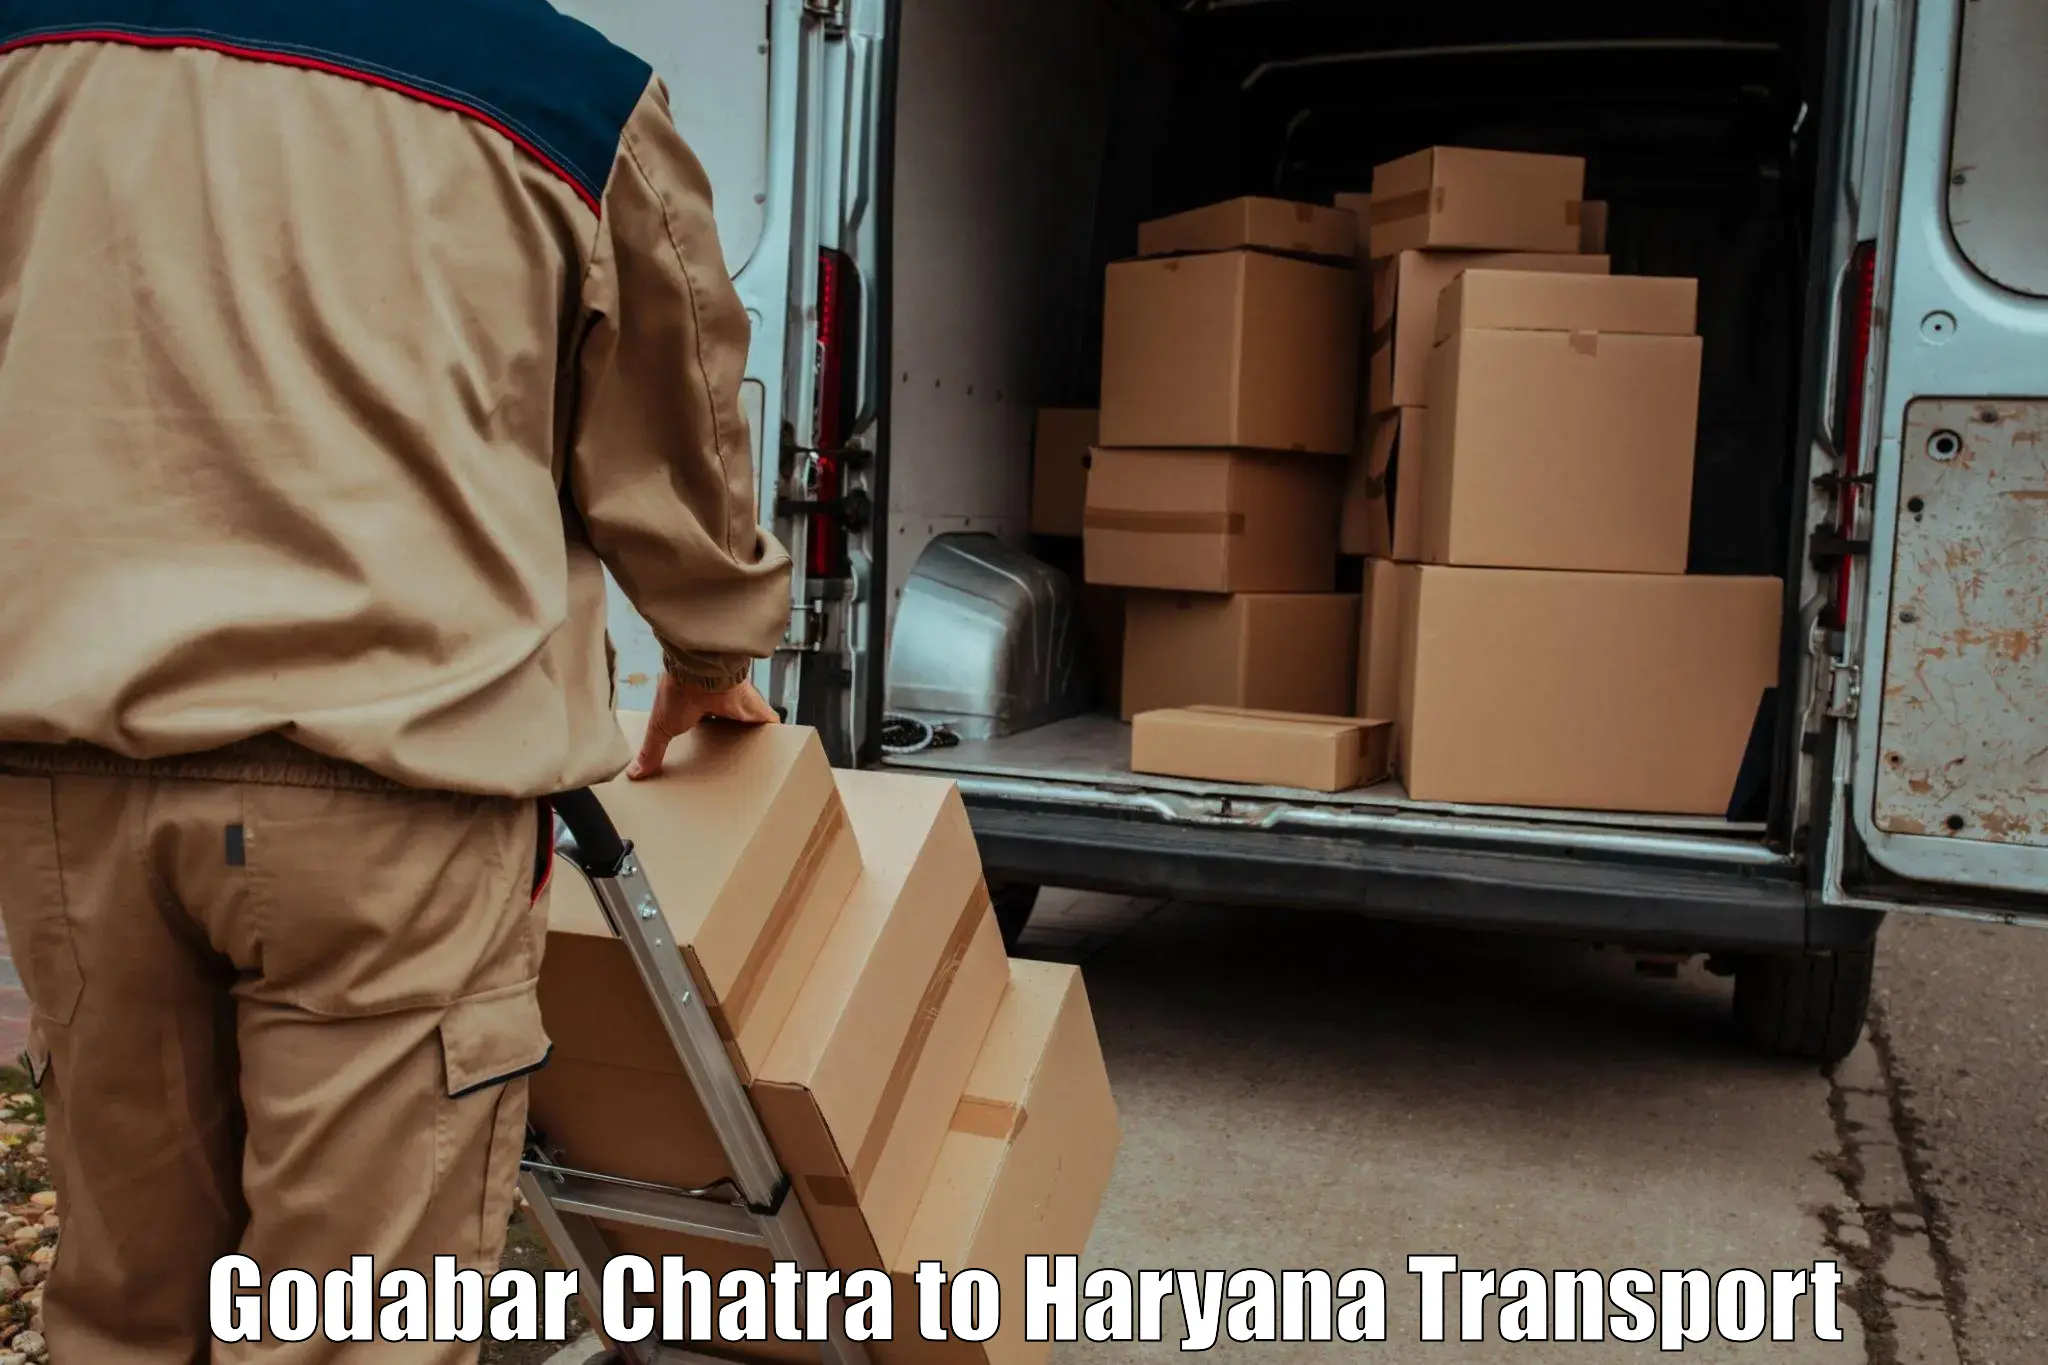 Cargo transportation services Godabar Chatra to Jhajjar